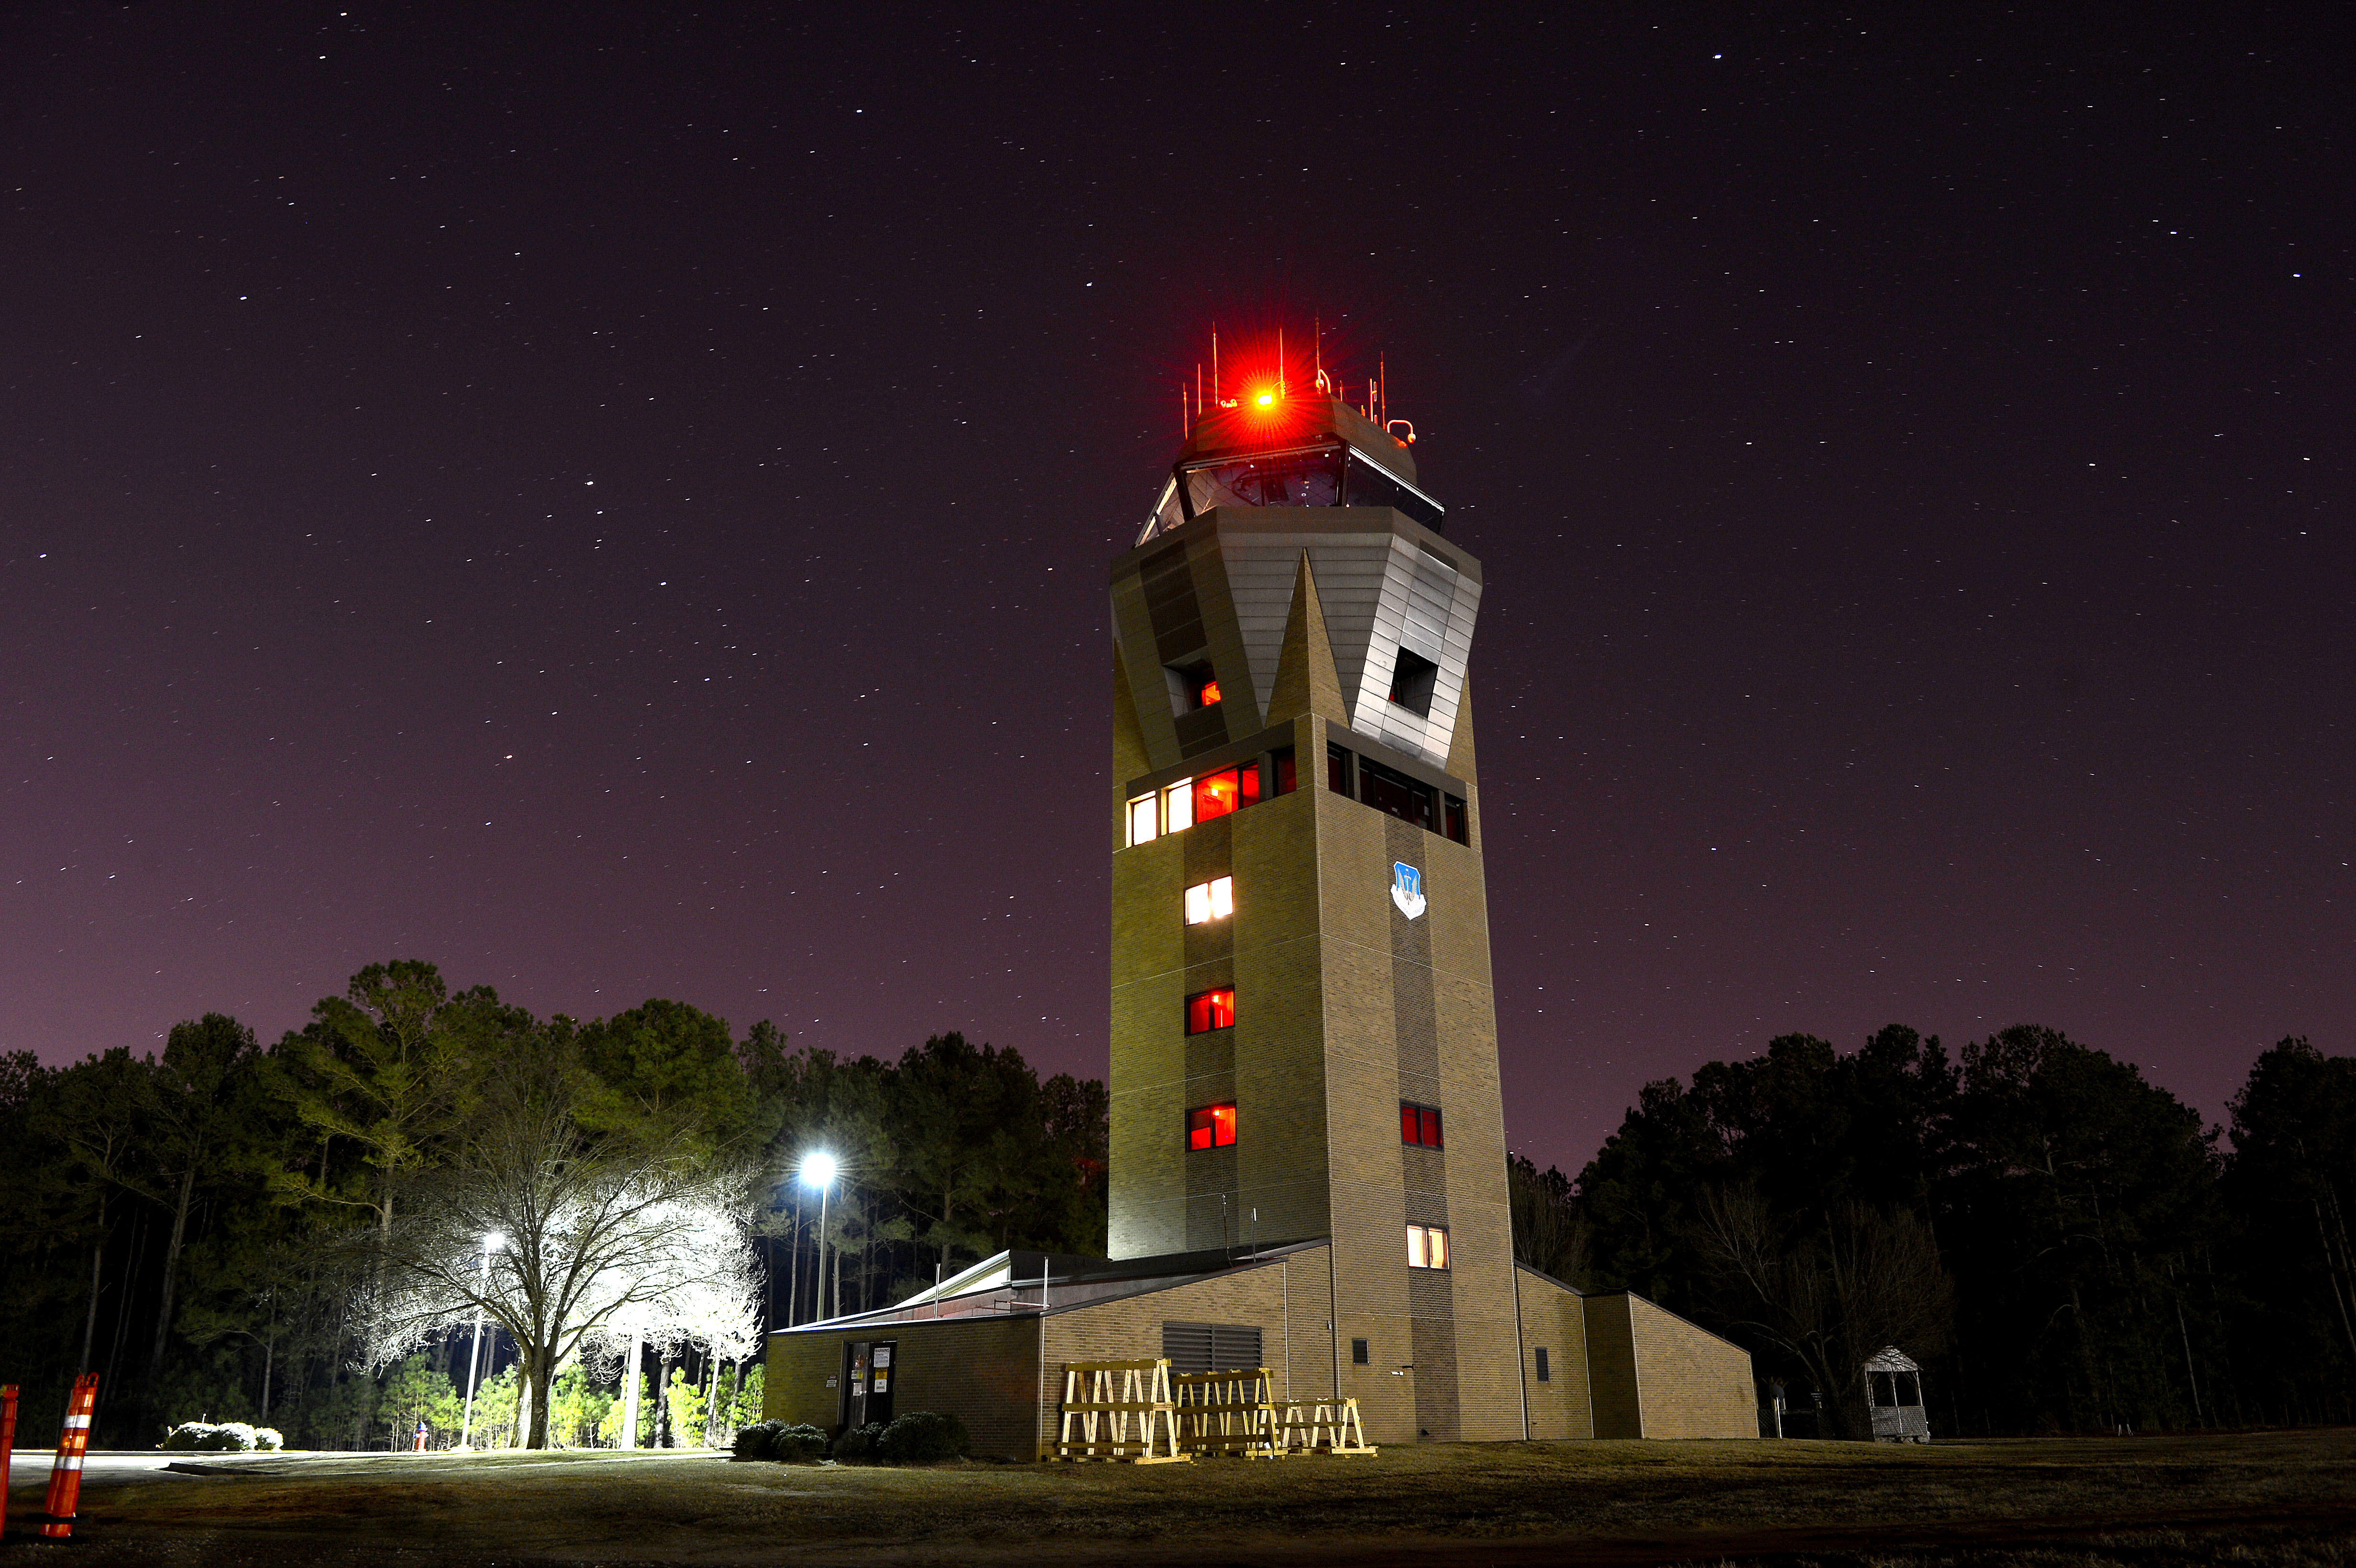 20 OSS tower illuminates the night